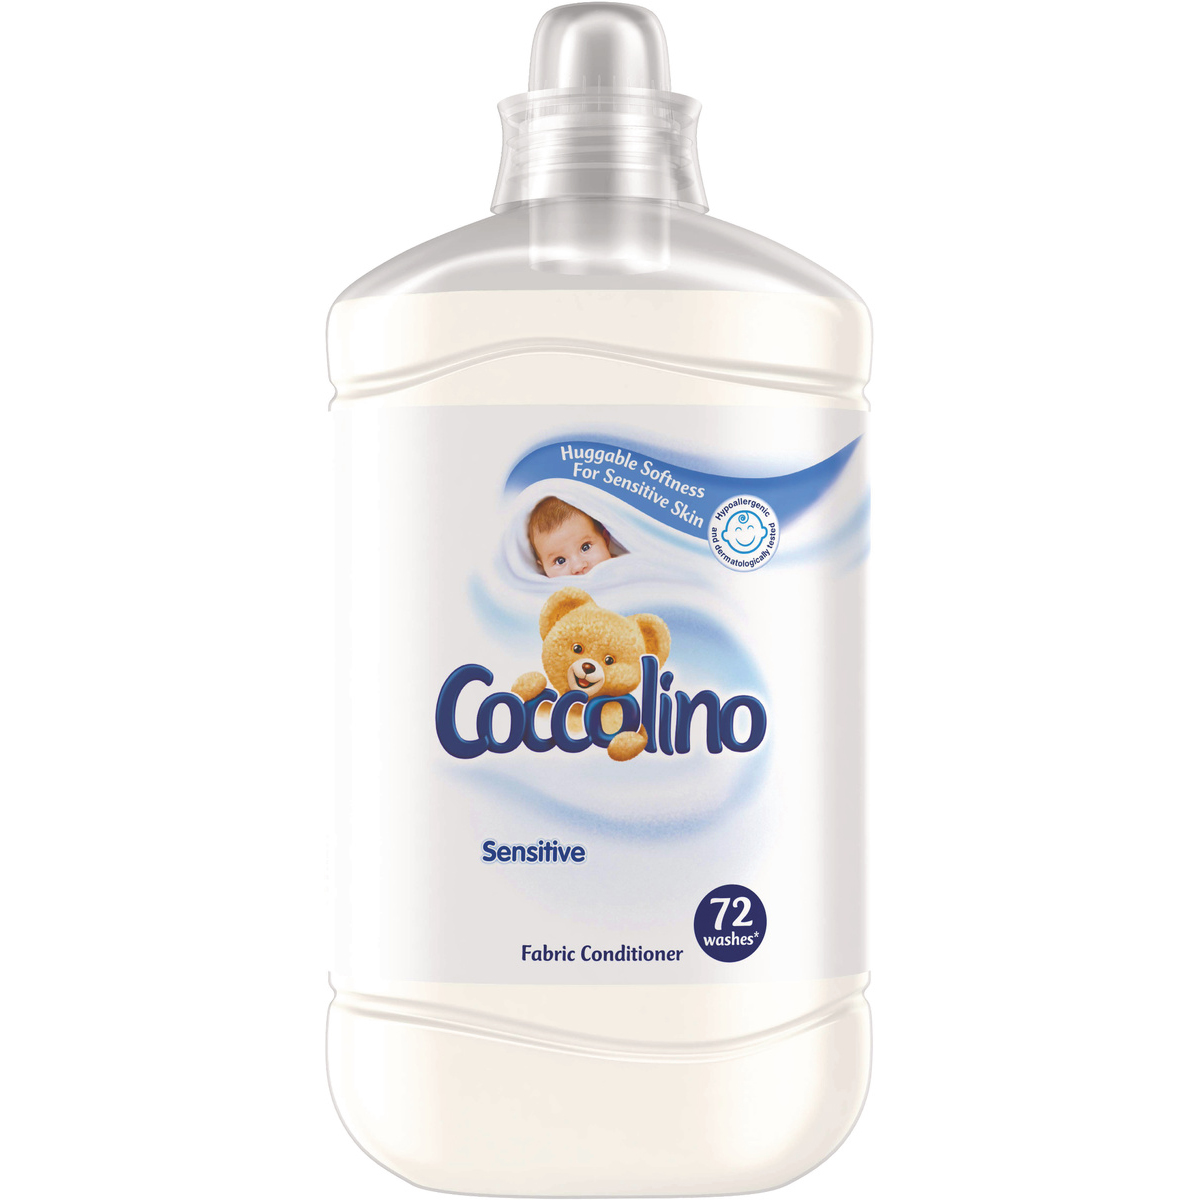 Balsam de rufe Coccolino Sensitive, 72 spalari, 1.8 L imagine